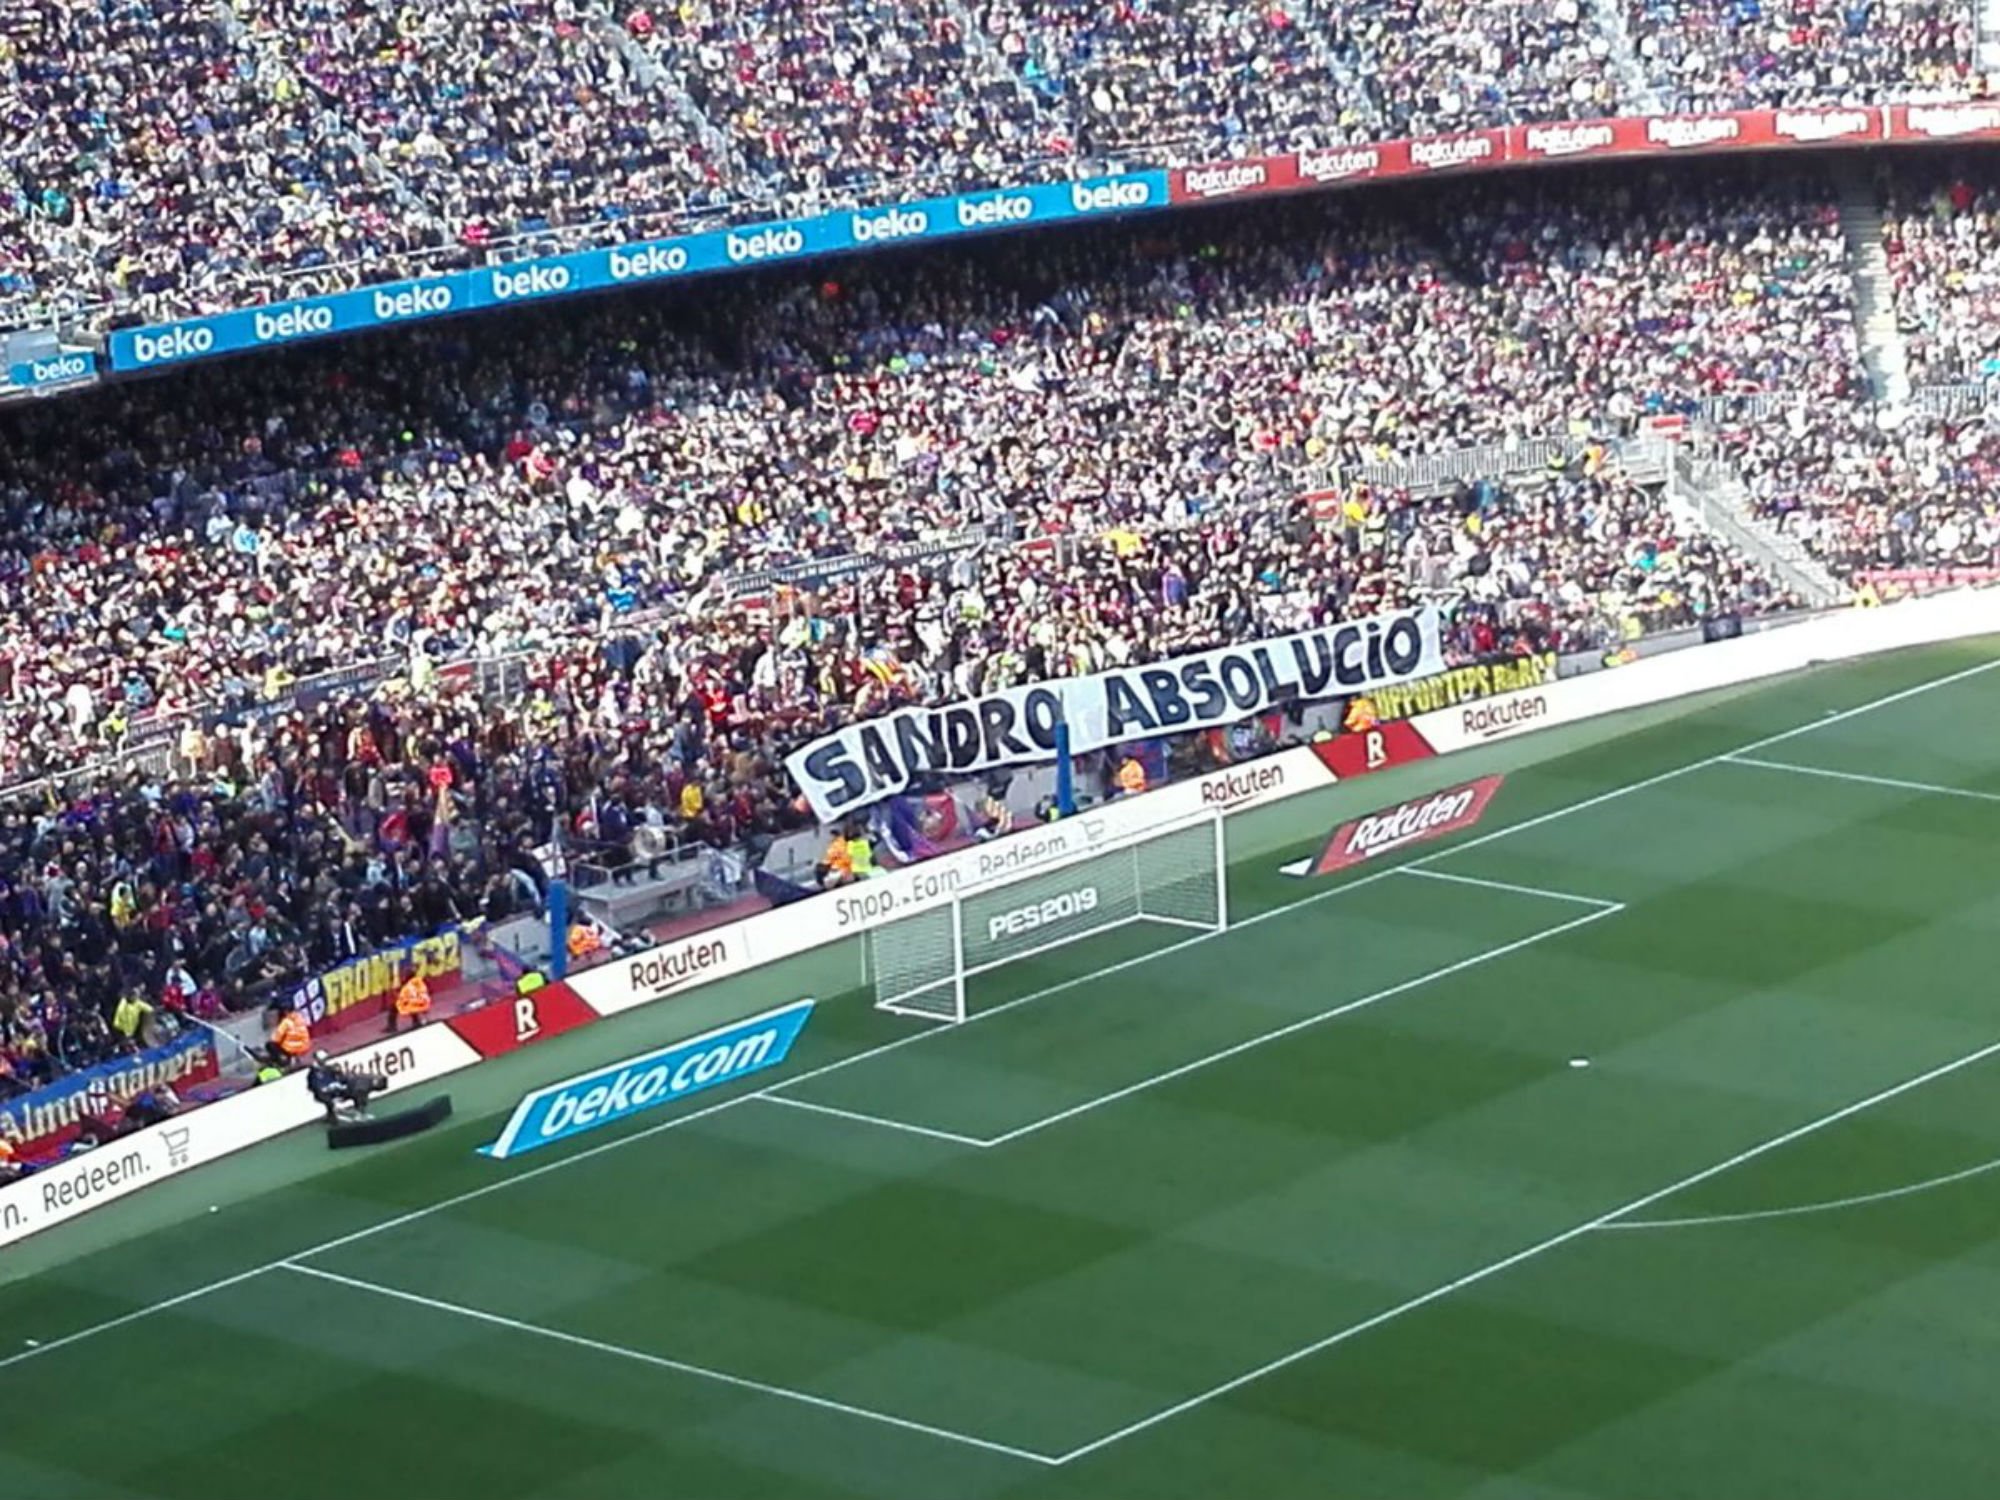 "Sandro absolución", el mensaje de la grada de animación en el Camp Nou